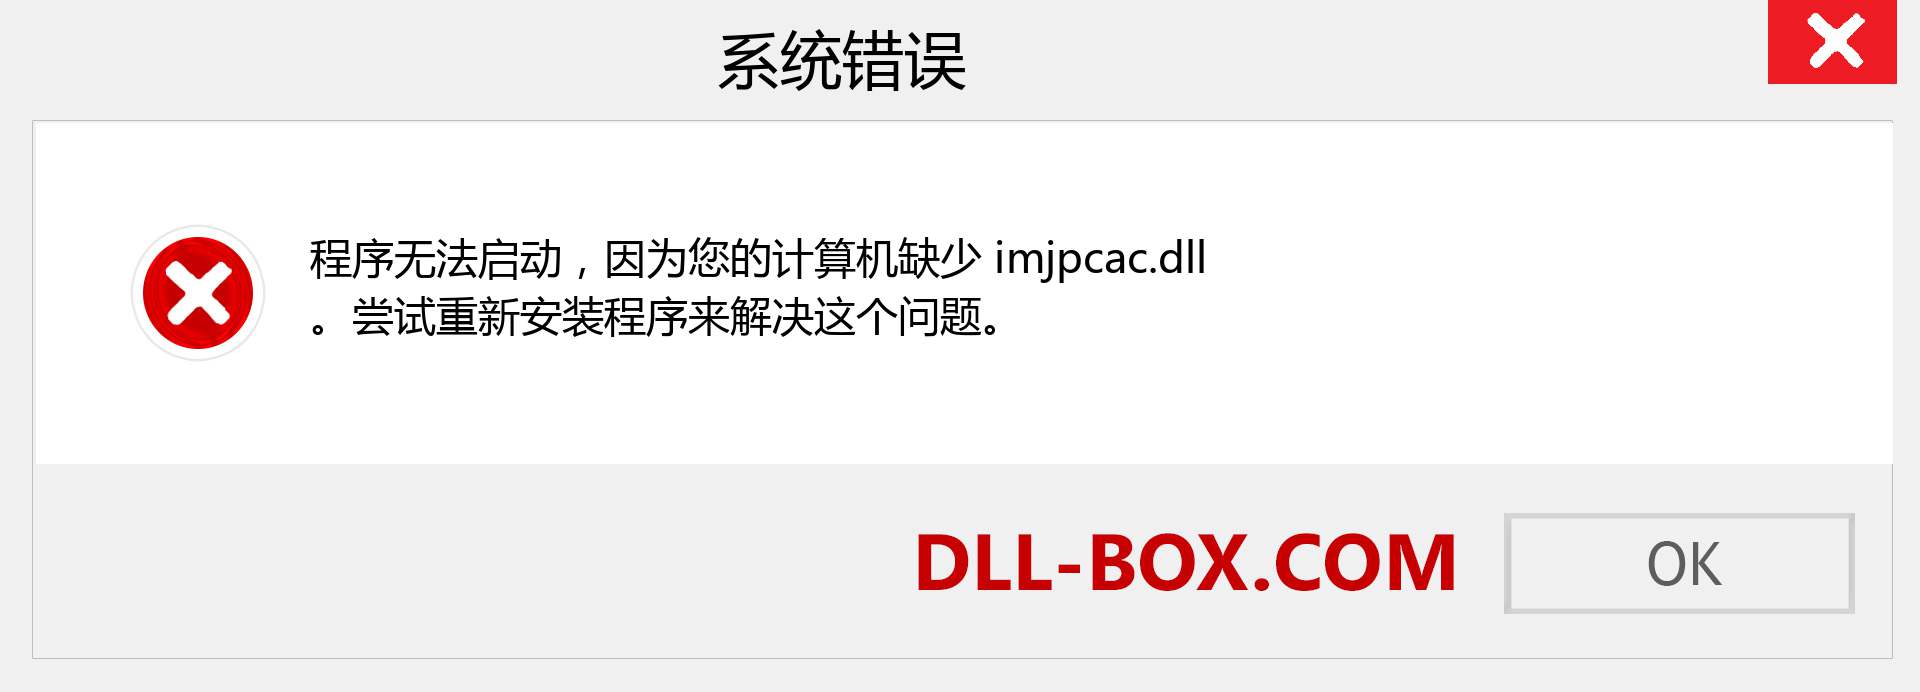 imjpcac.dll 文件丢失？。 适用于 Windows 7、8、10 的下载 - 修复 Windows、照片、图像上的 imjpcac dll 丢失错误